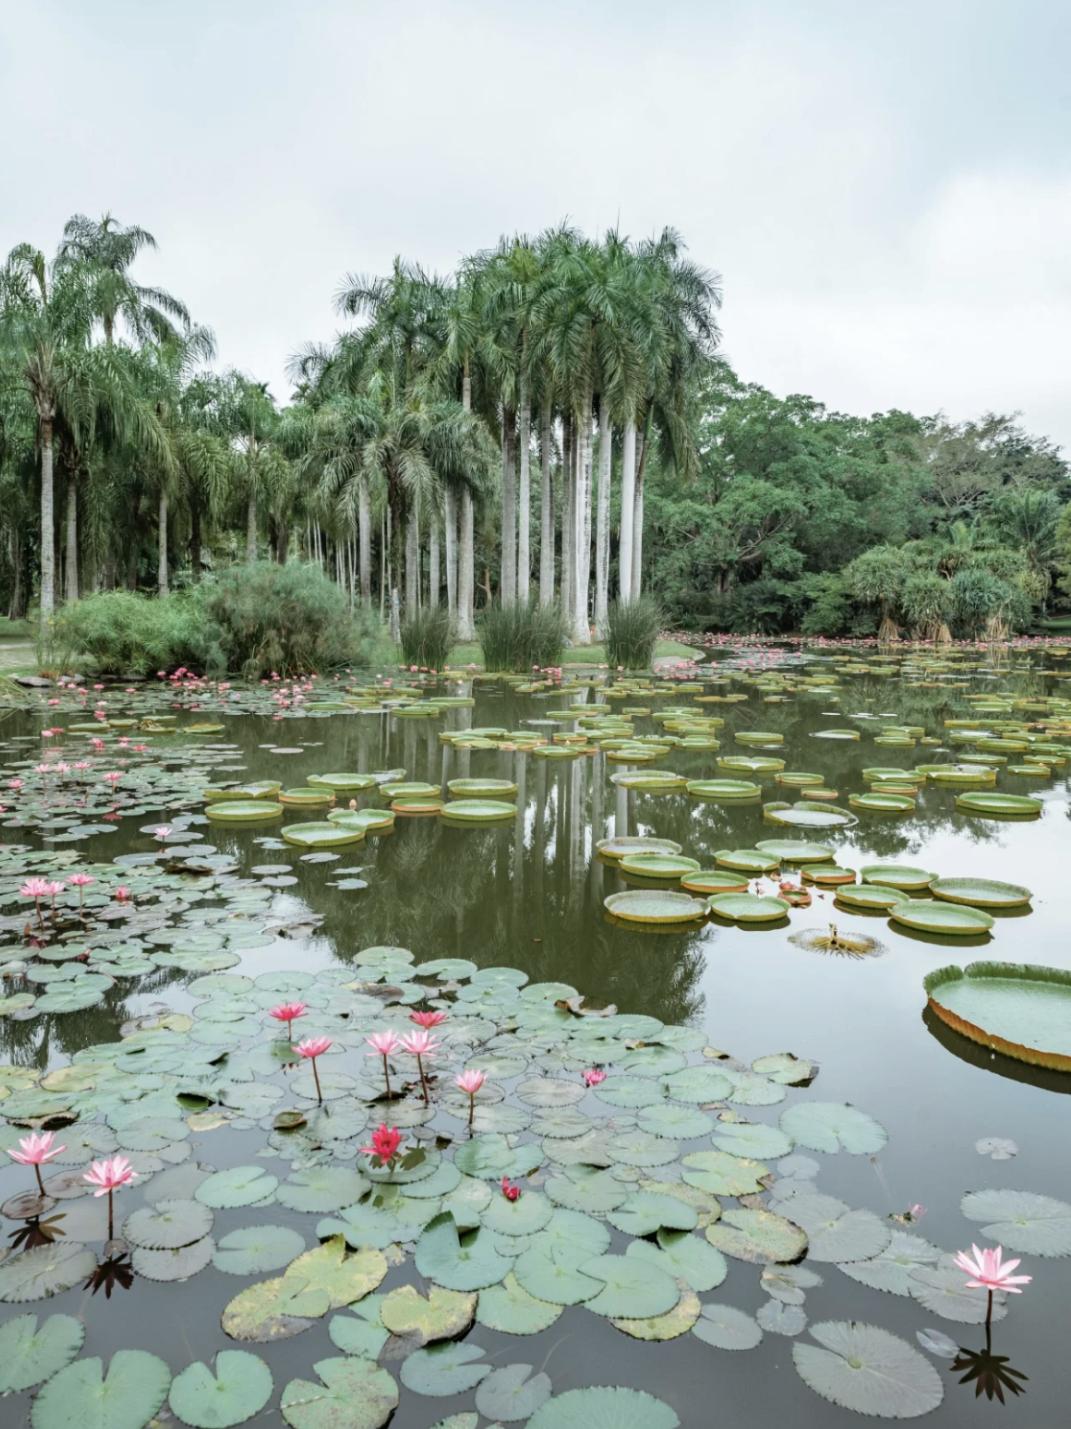 中科院西双版纳植物园的水生植物园,王莲,棕榈,竹筏,如诗如画.